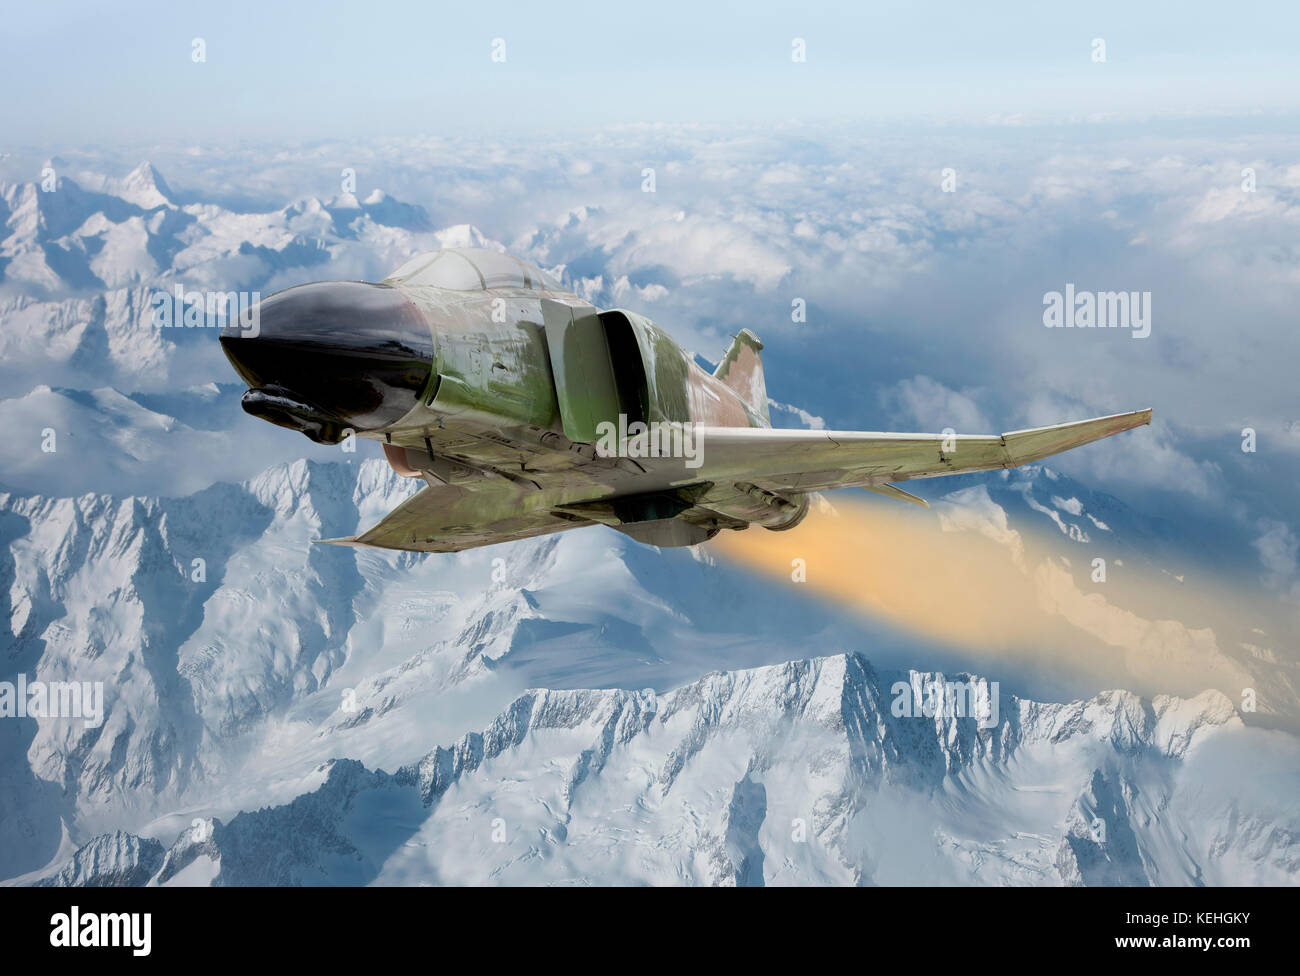 Avion militaire survolant un paysage hivernal Banque D'Images